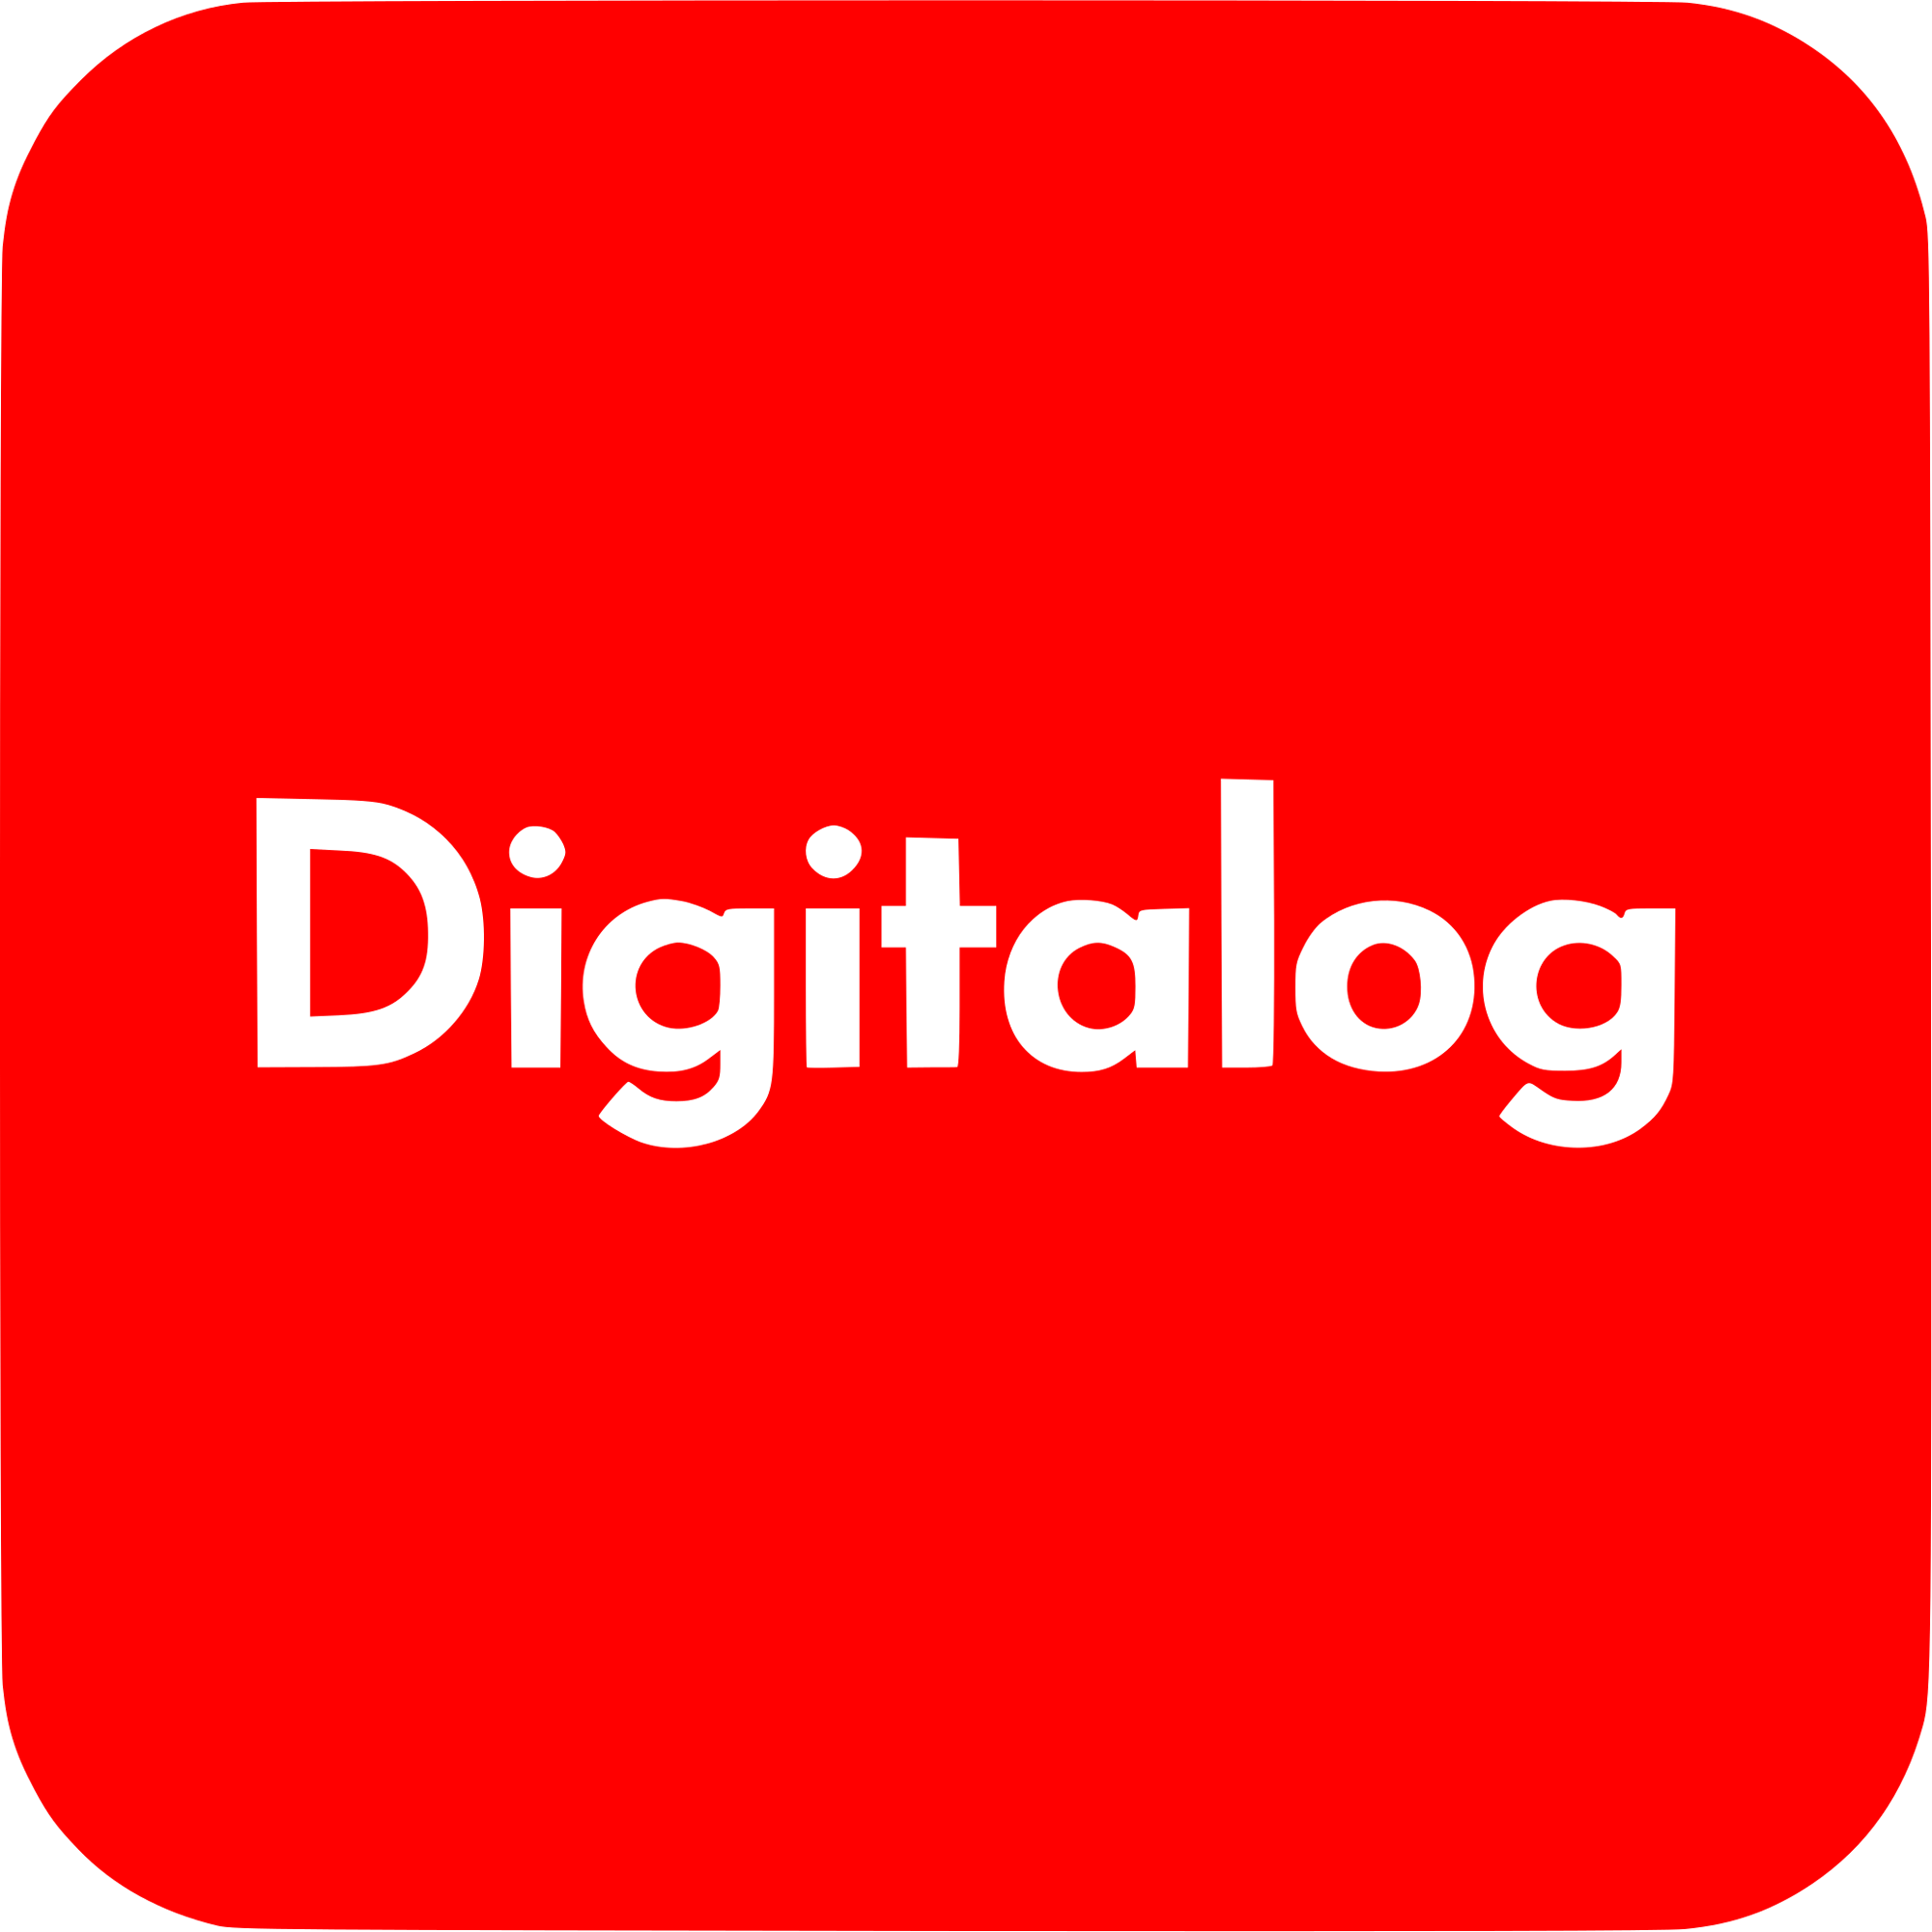 Digitalog Logo  Transparent Photo